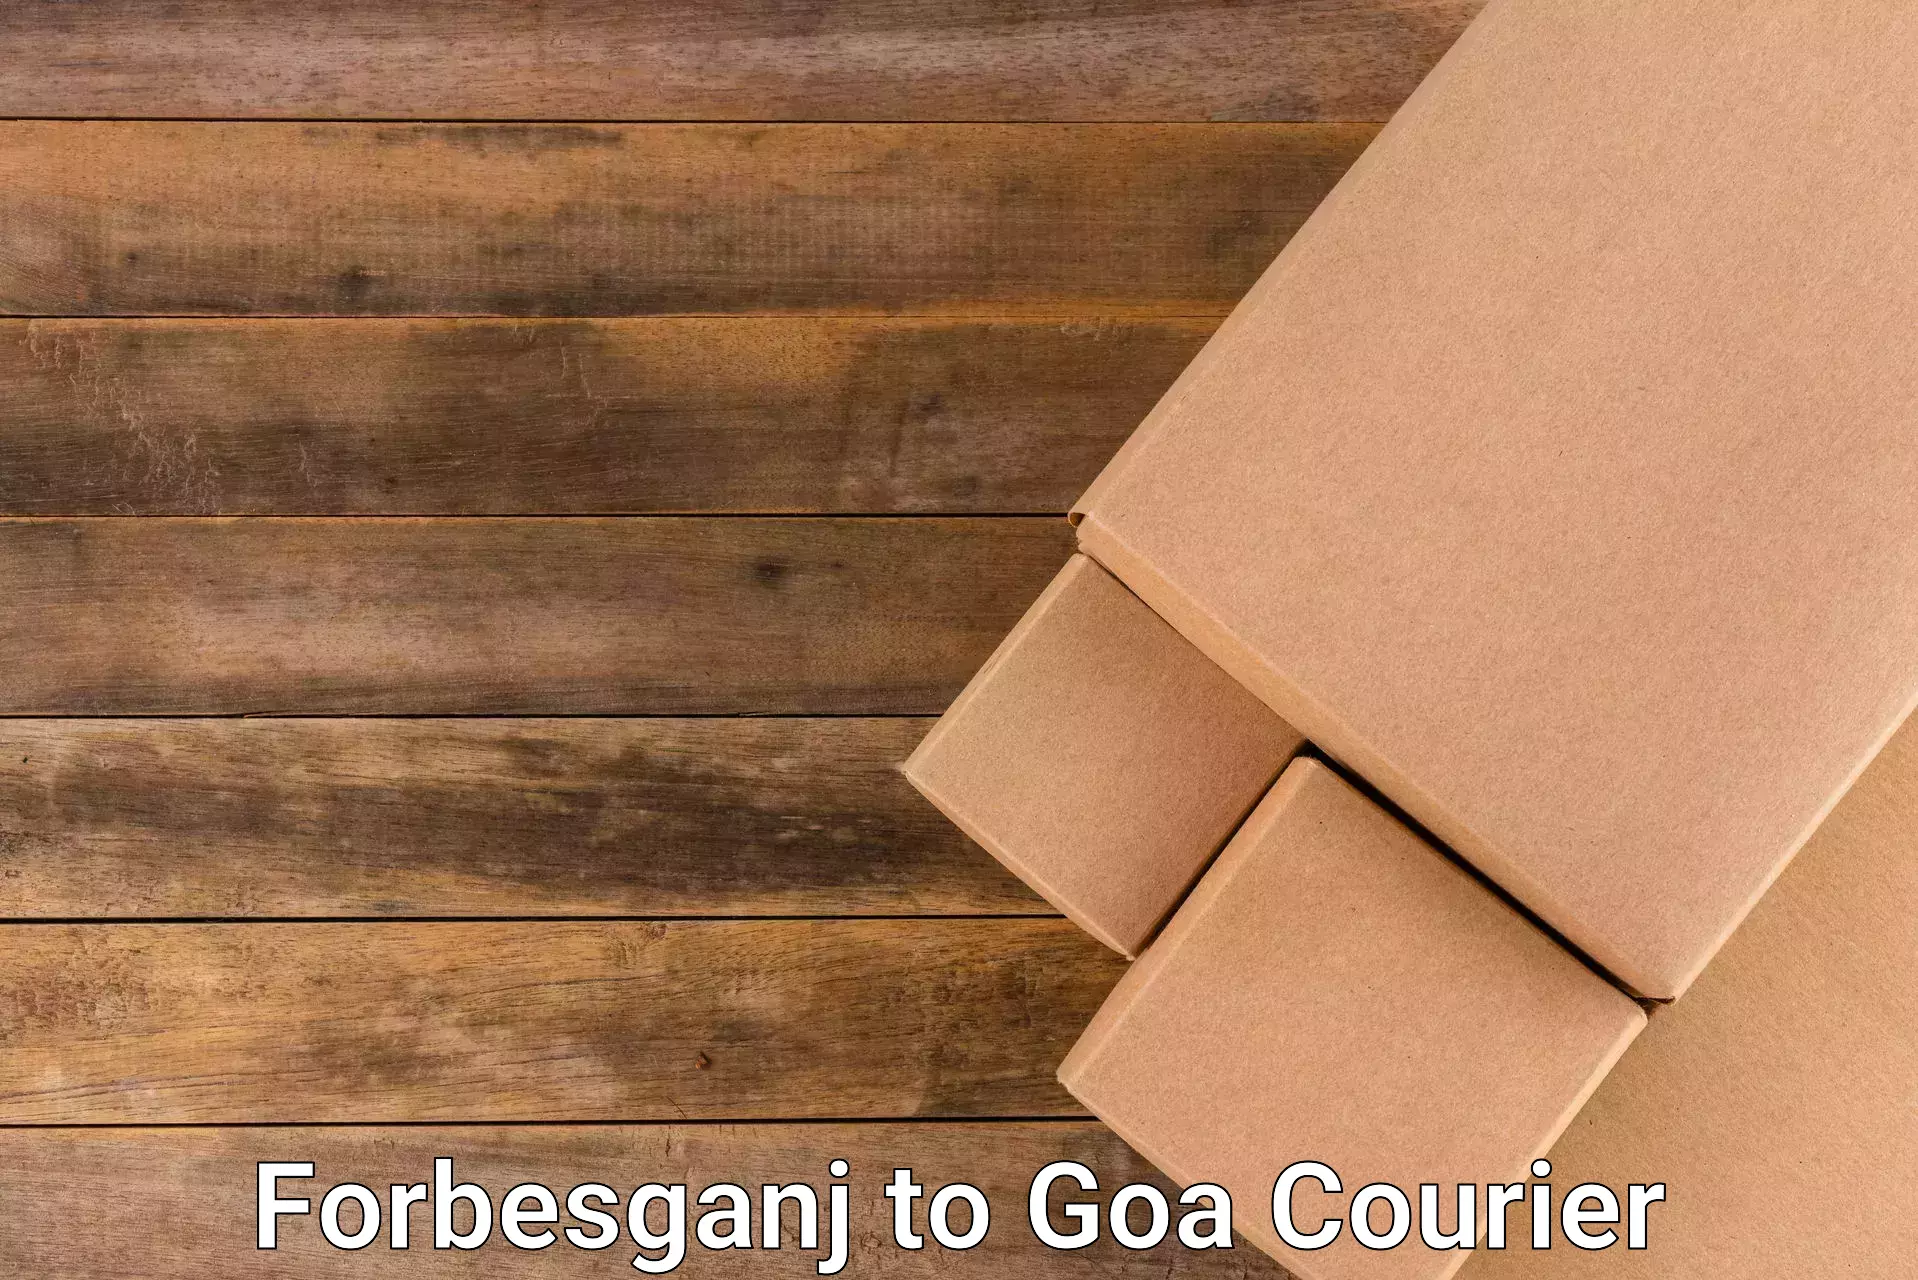 Next-day freight services Forbesganj to South Goa